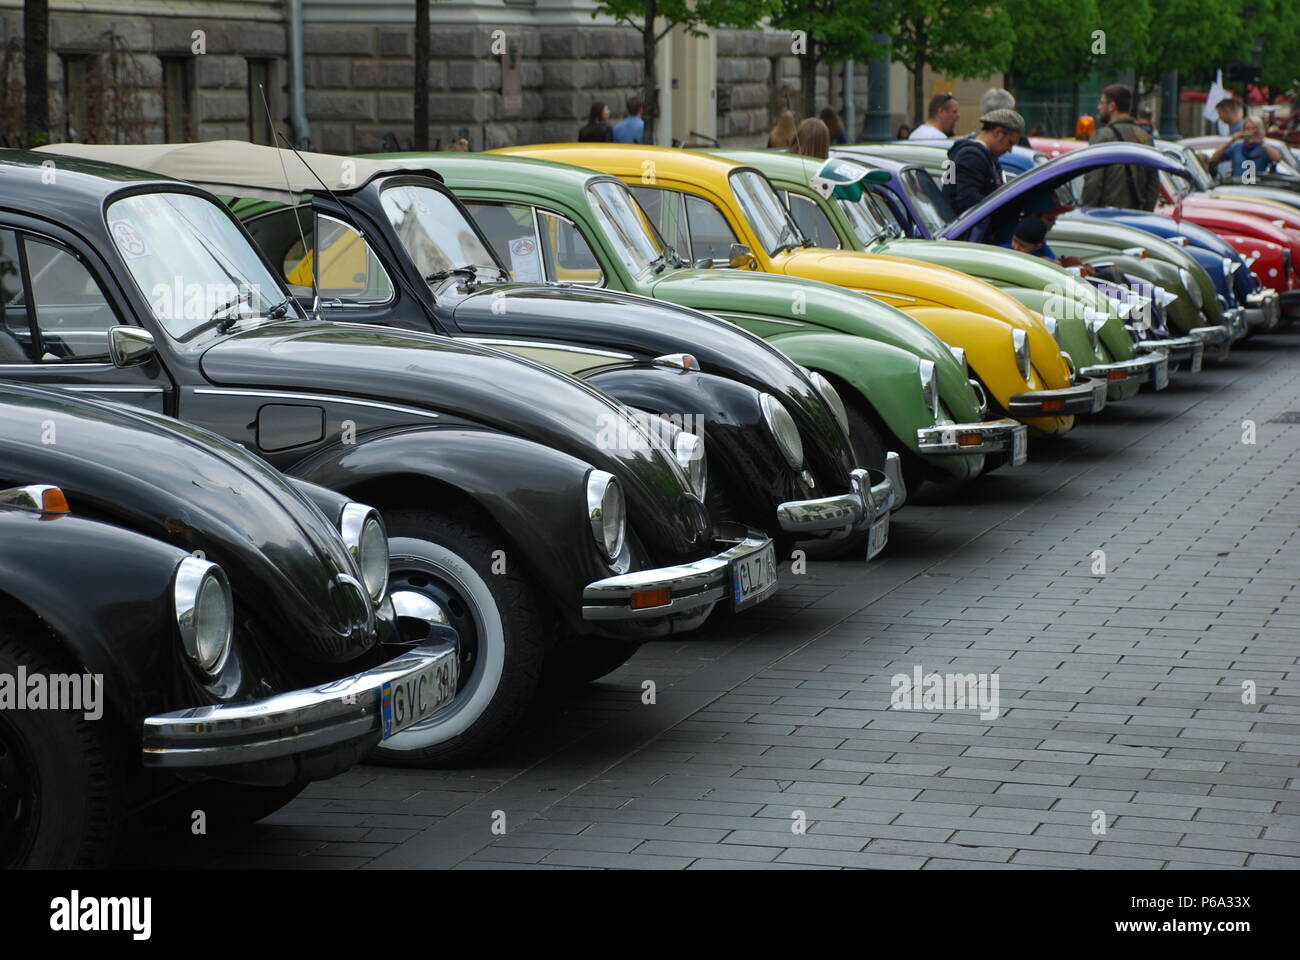 Volkswagen Beetle Stock Photo